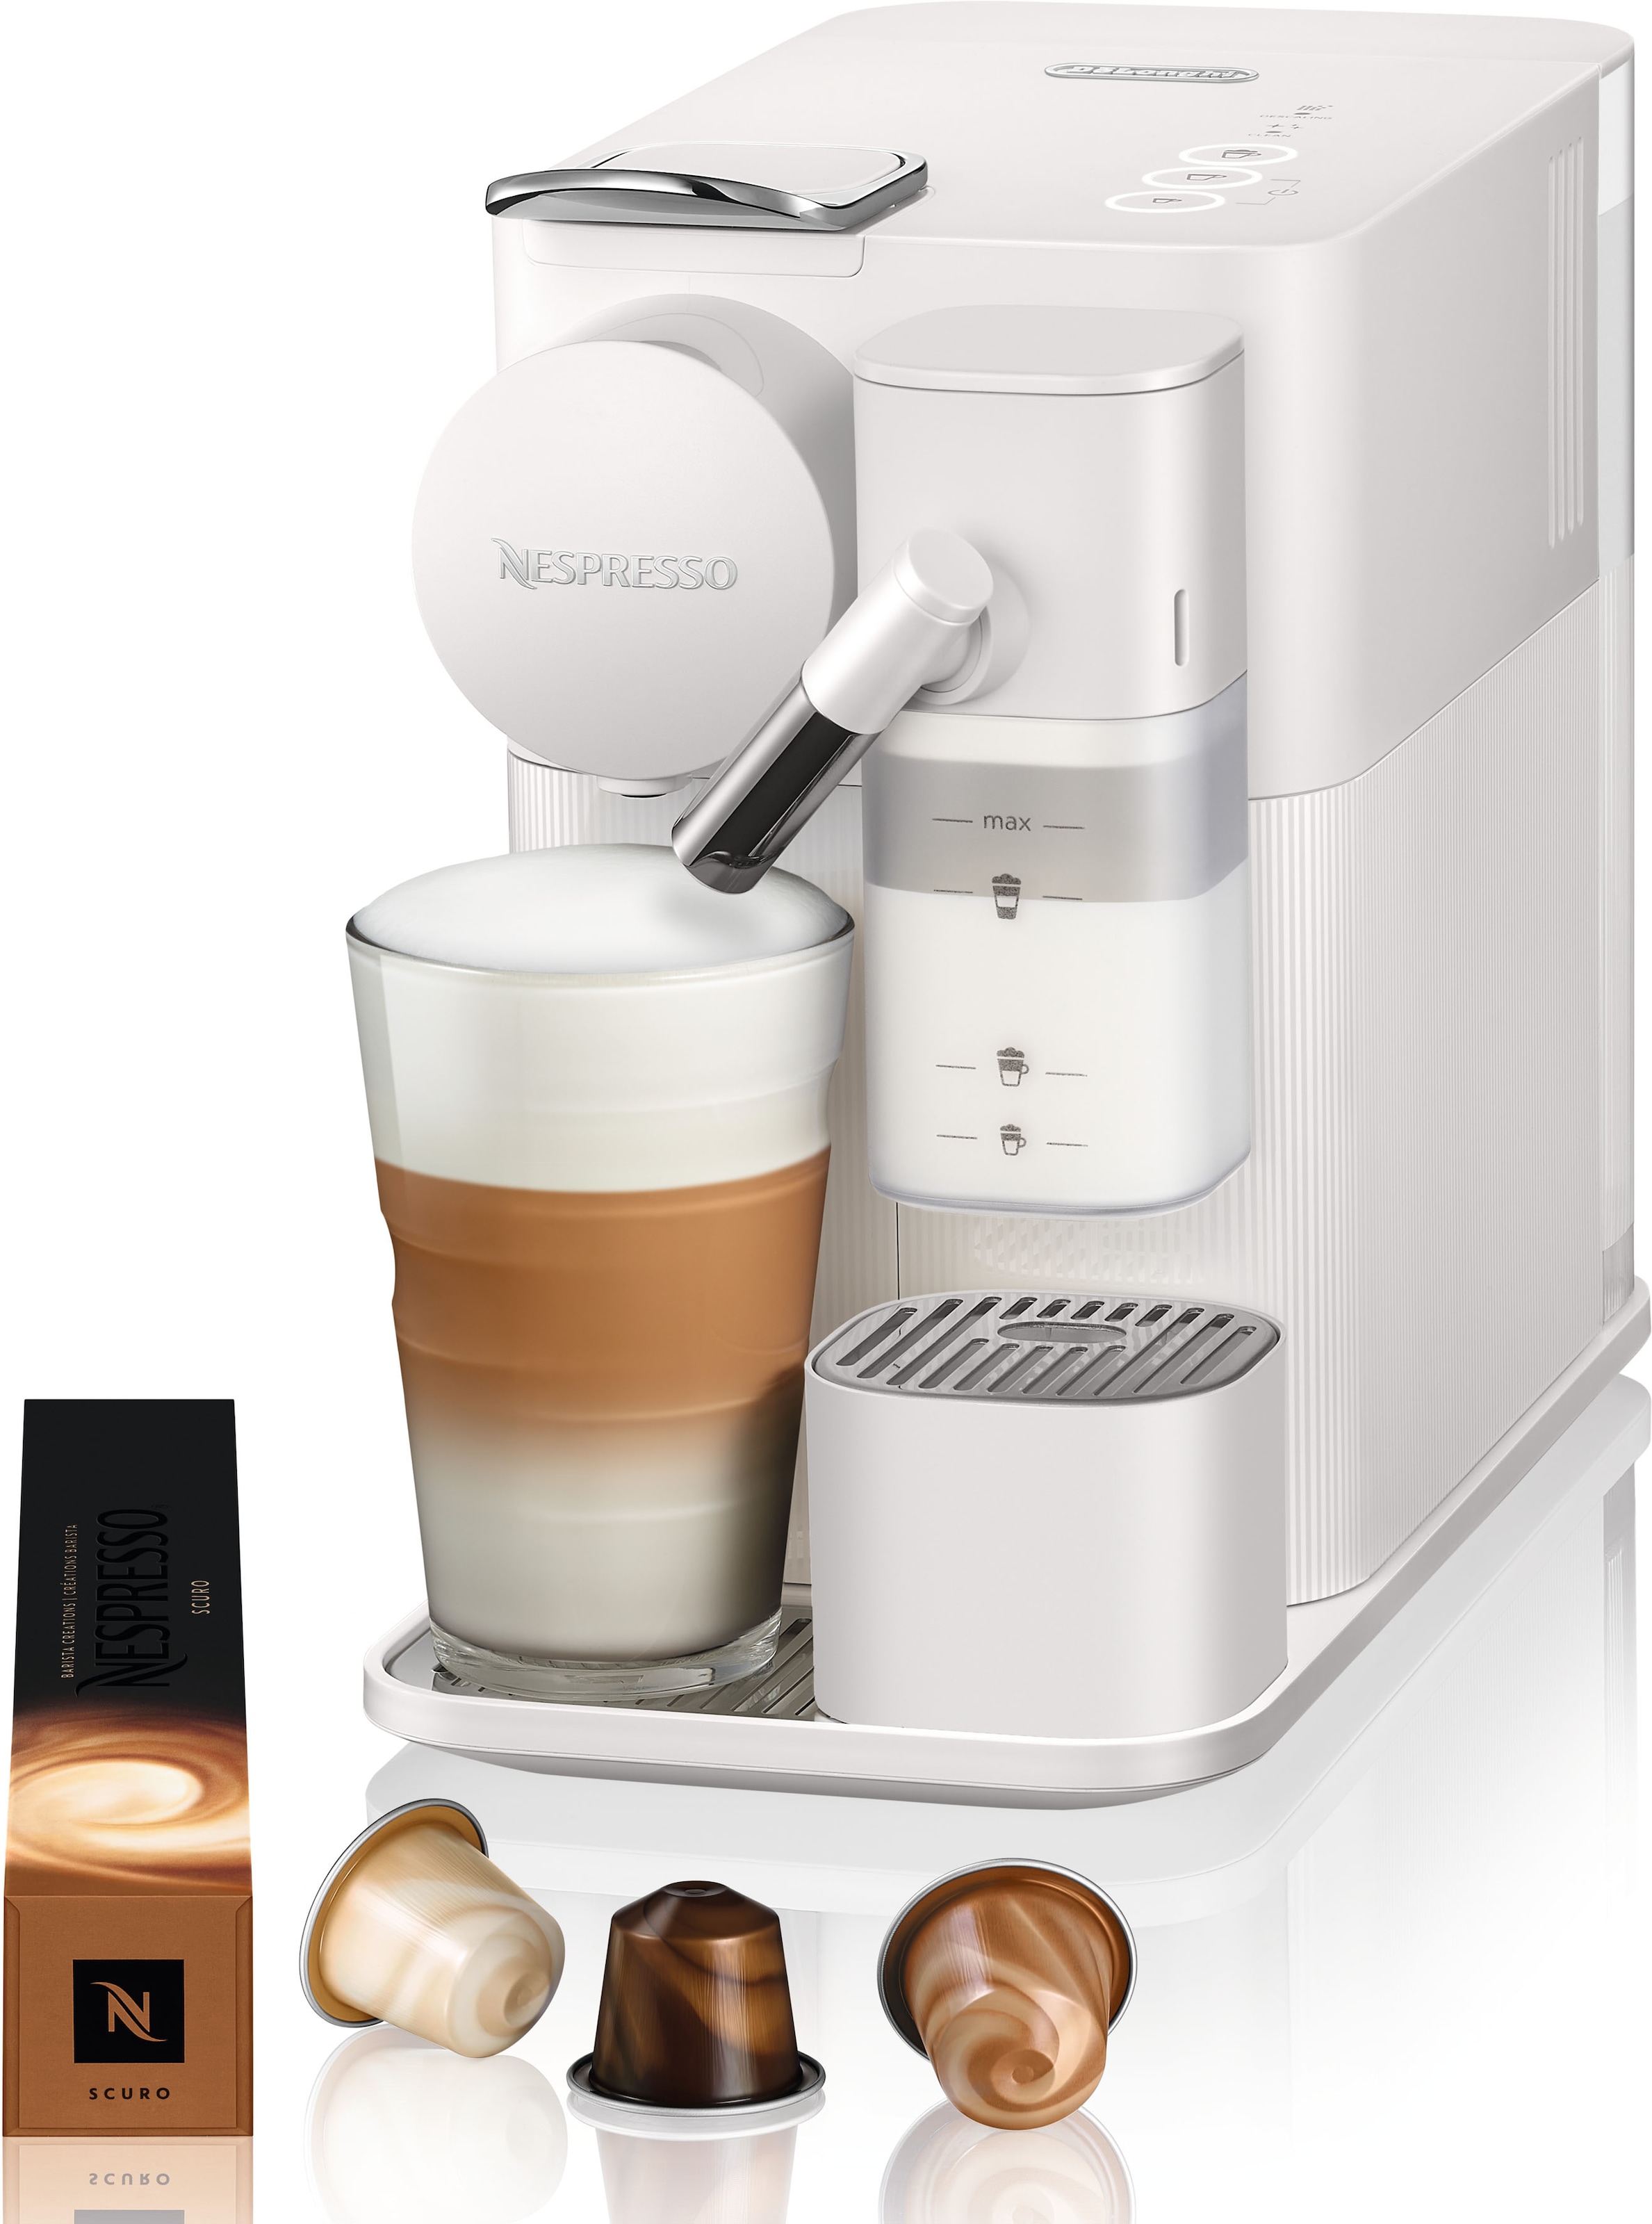 Nespresso Kapselmaschine "Lattissima One EN510.W von DeLonghi, White", inkl. Willkommenspaket mit 7 Kapseln